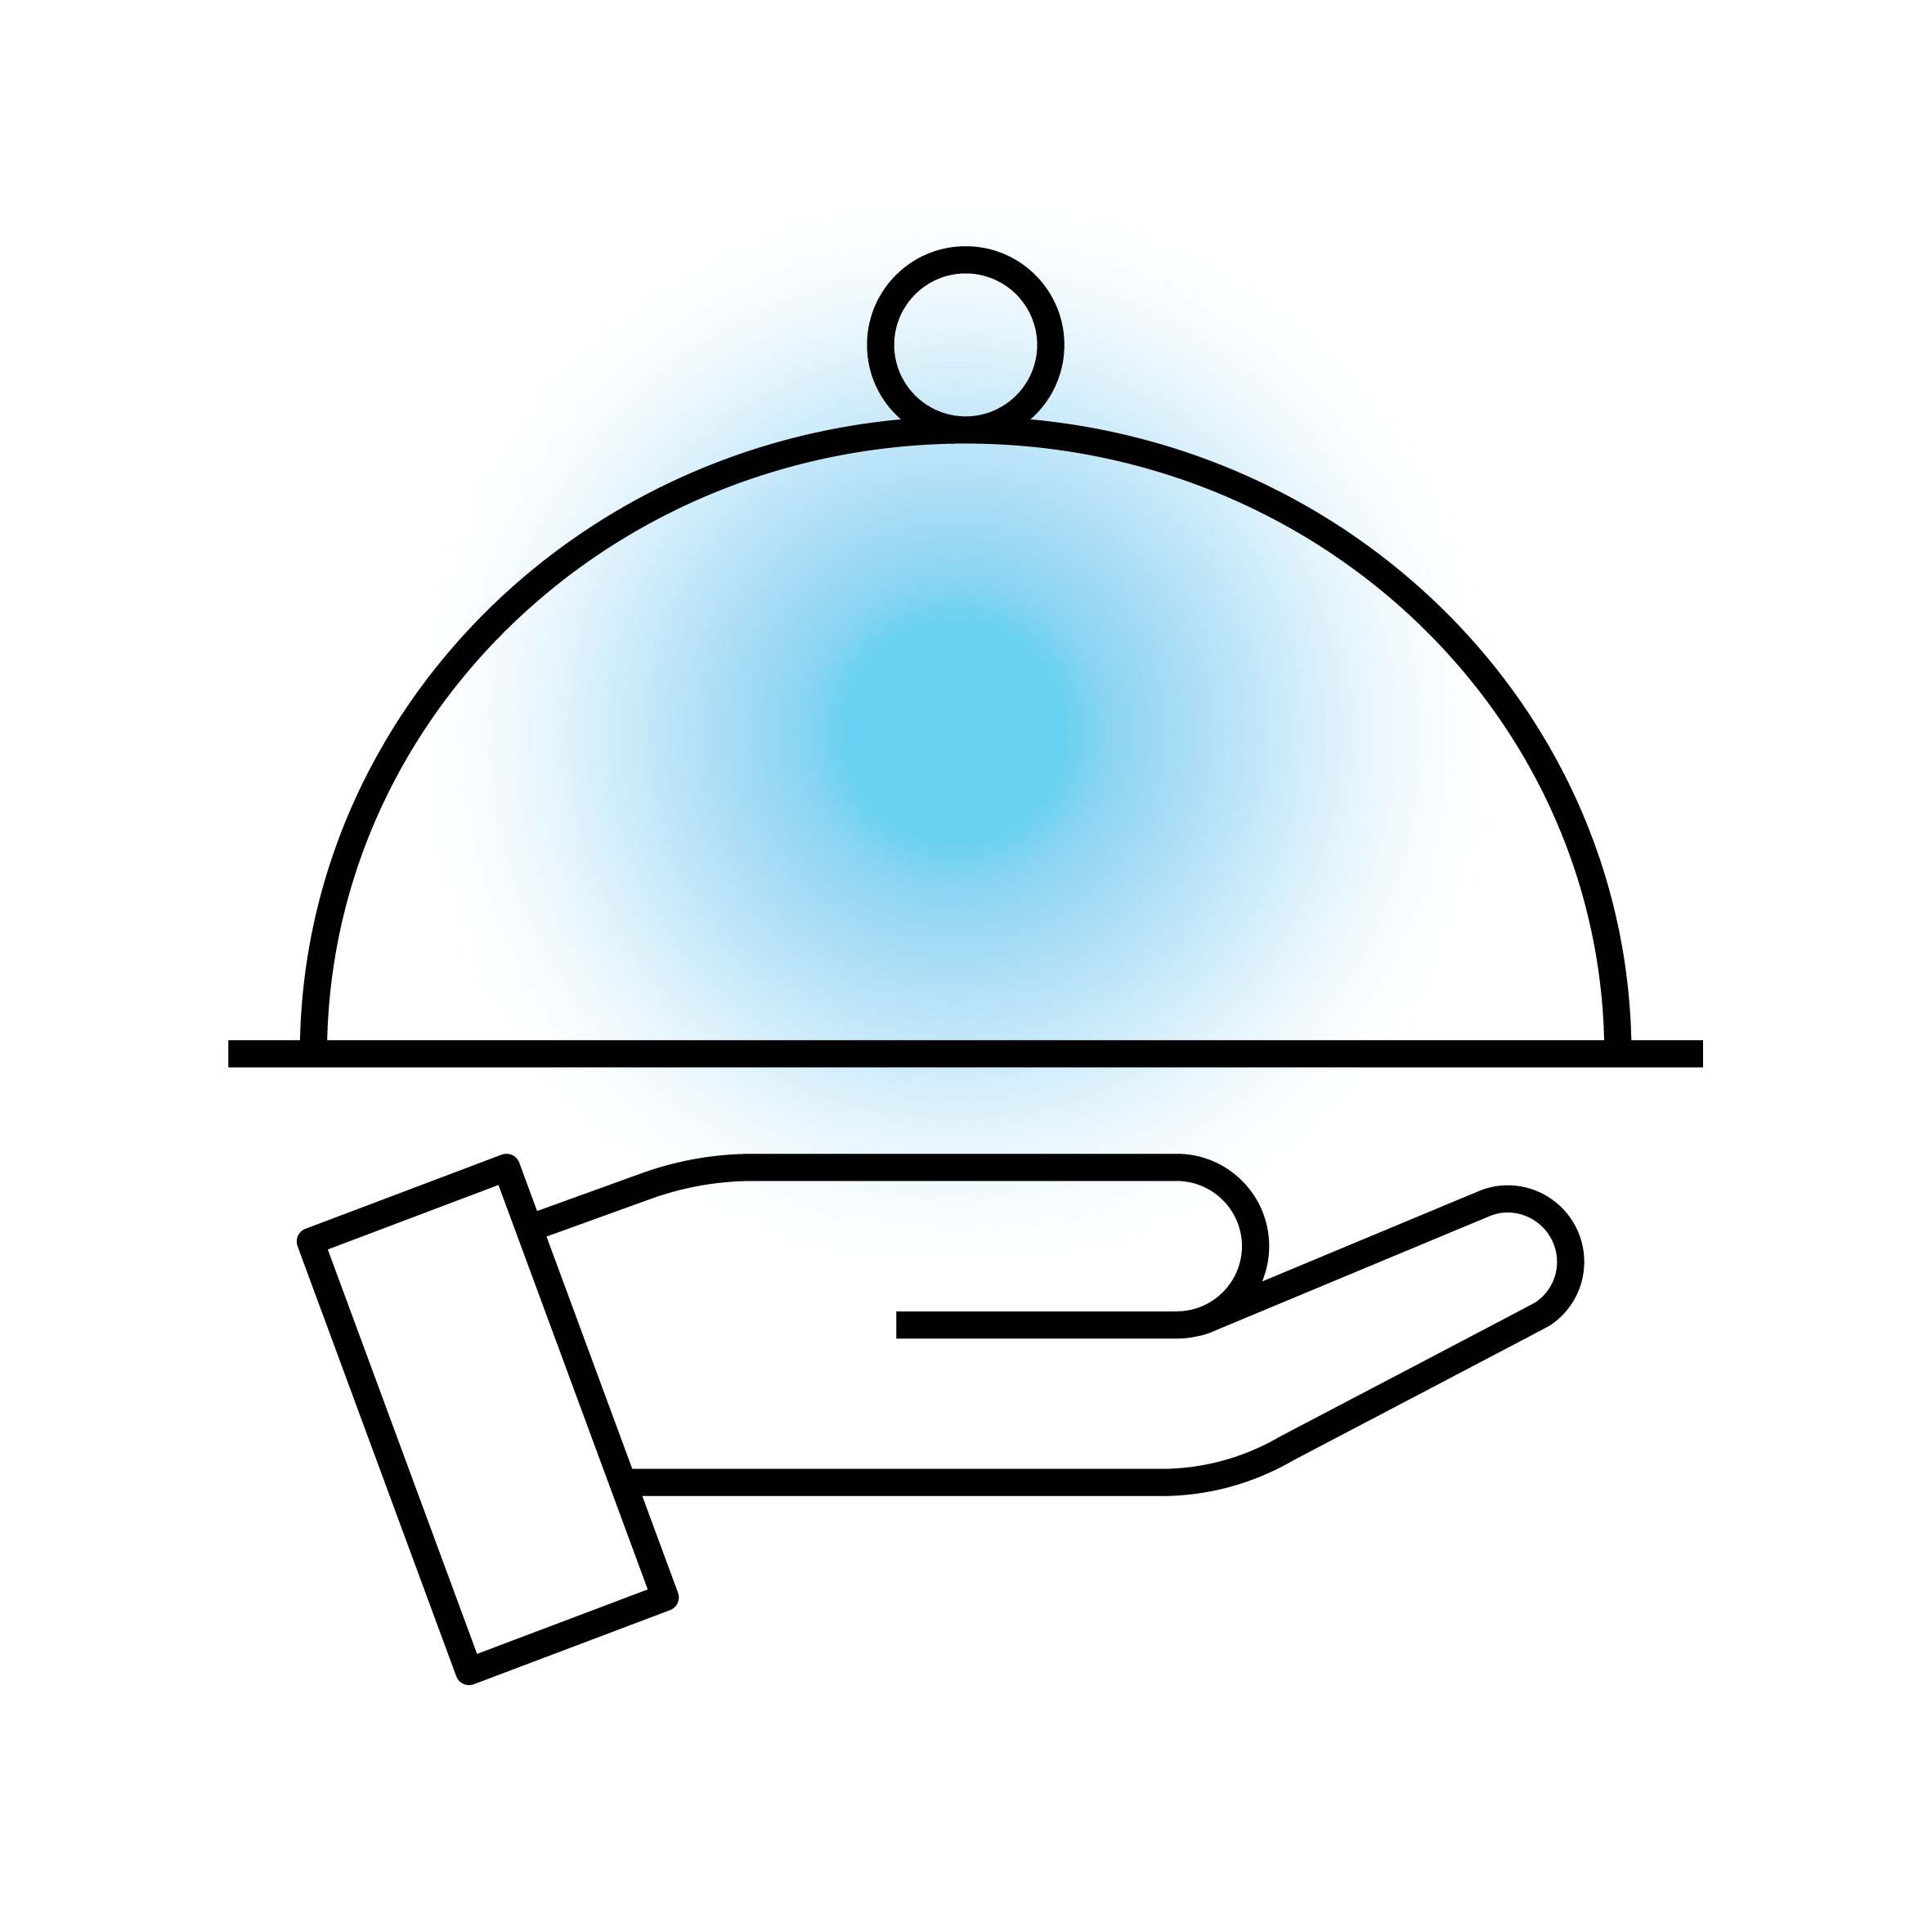 Service-Glocke auf einer Hand – Icon für Gastgewerbe und Service.